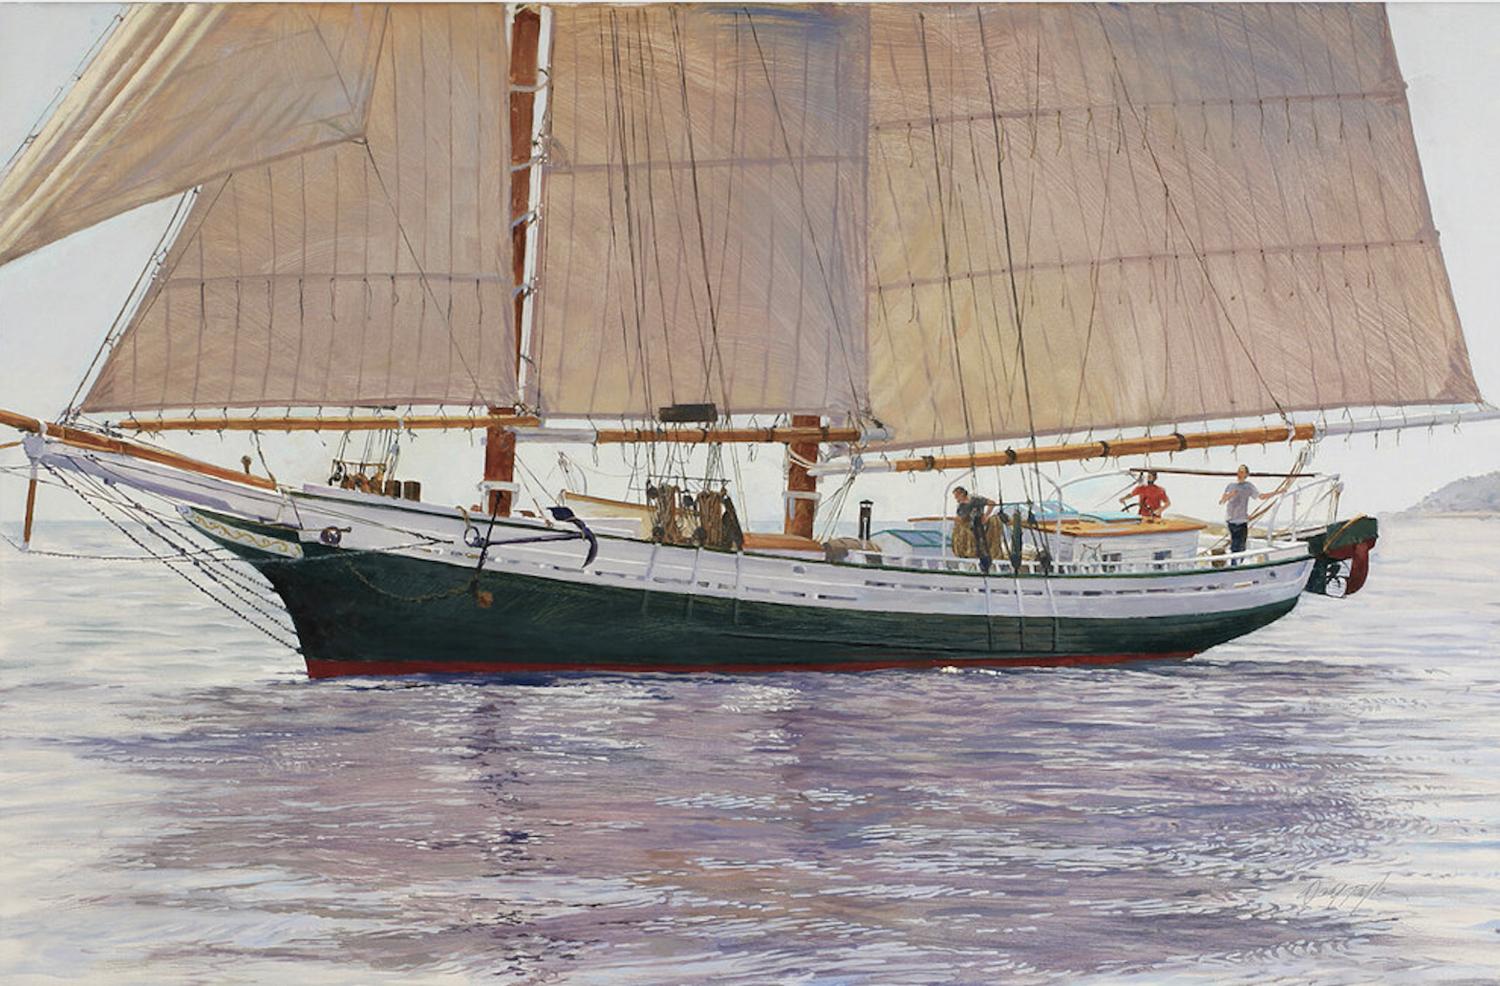 Das Werk "Waiting for a Chance" ist ein 24x36 großes Ölgemälde auf Leinwand des Künstlers Dahl Taylor, das eine maritime Szene mit einem großen Segelboot auf dem Wasser zeigt. 

Über den Künstler:
In über 30 Jahren hat Taylor an einer Vielzahl von